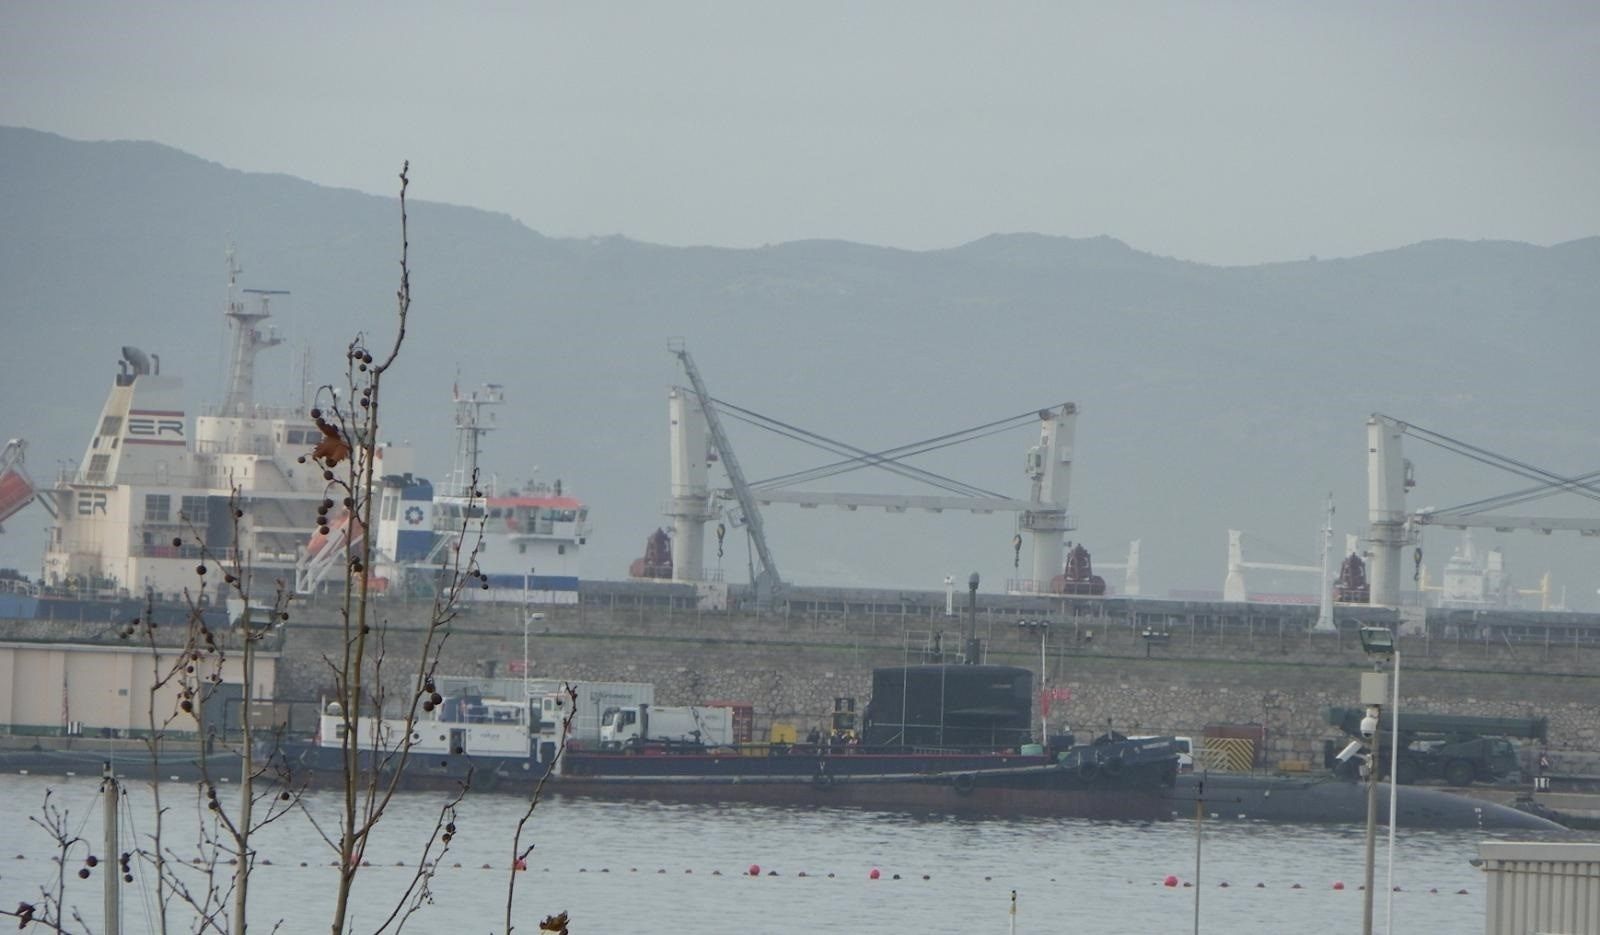 Submarino nuclear atracado en Gibraltar.